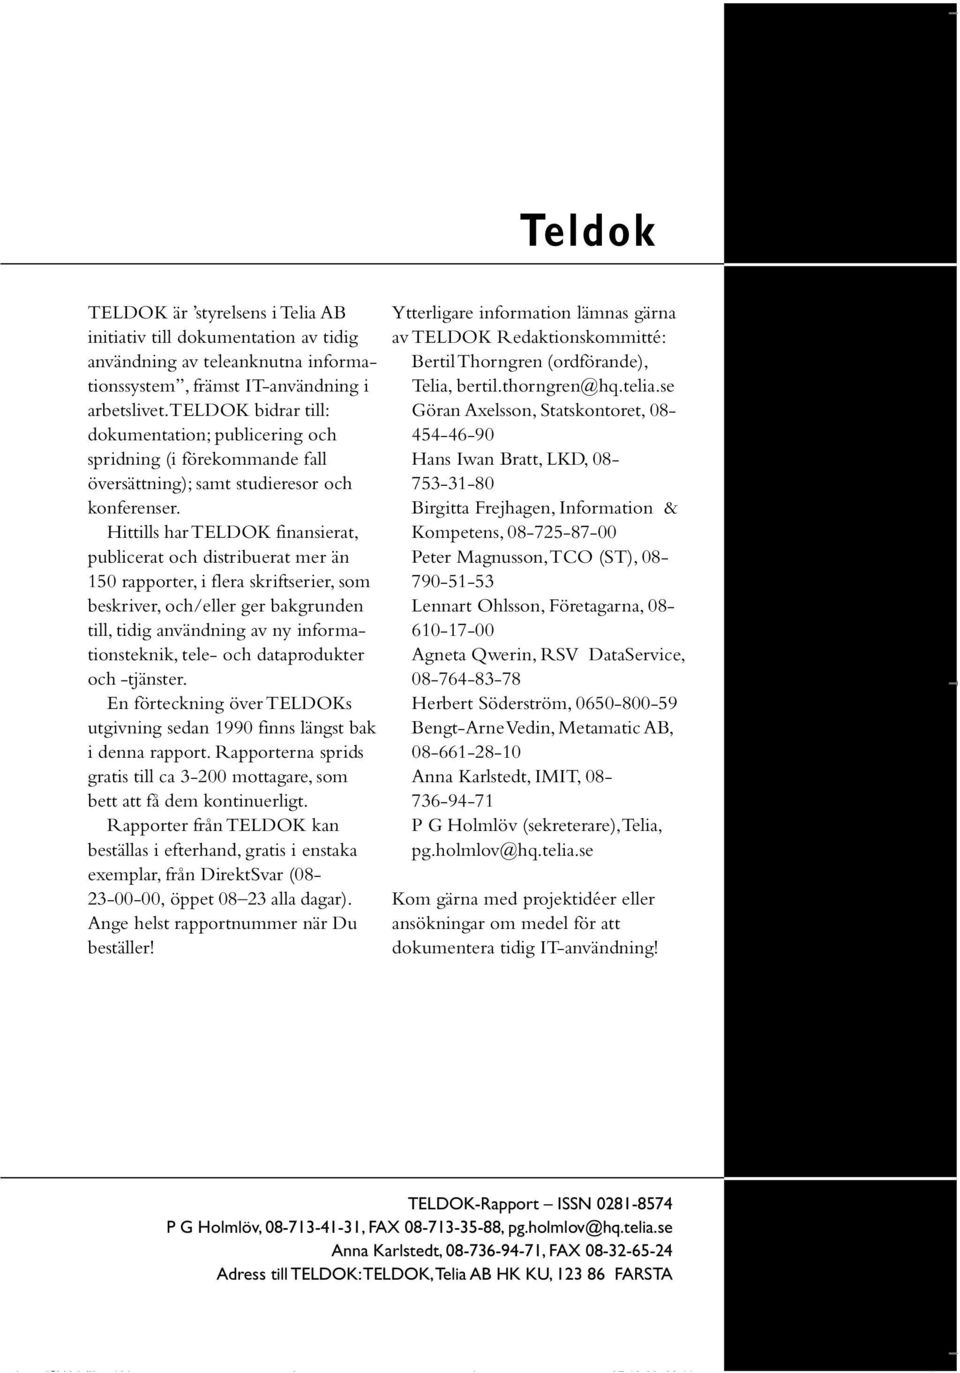 Hittills har TELDOK finansierat, publicerat och distribuerat mer än 150 rapporter, i flera skriftserier, som beskriver, och/eller ger bakgrunden till, tidig användning av ny informationsteknik, tele-